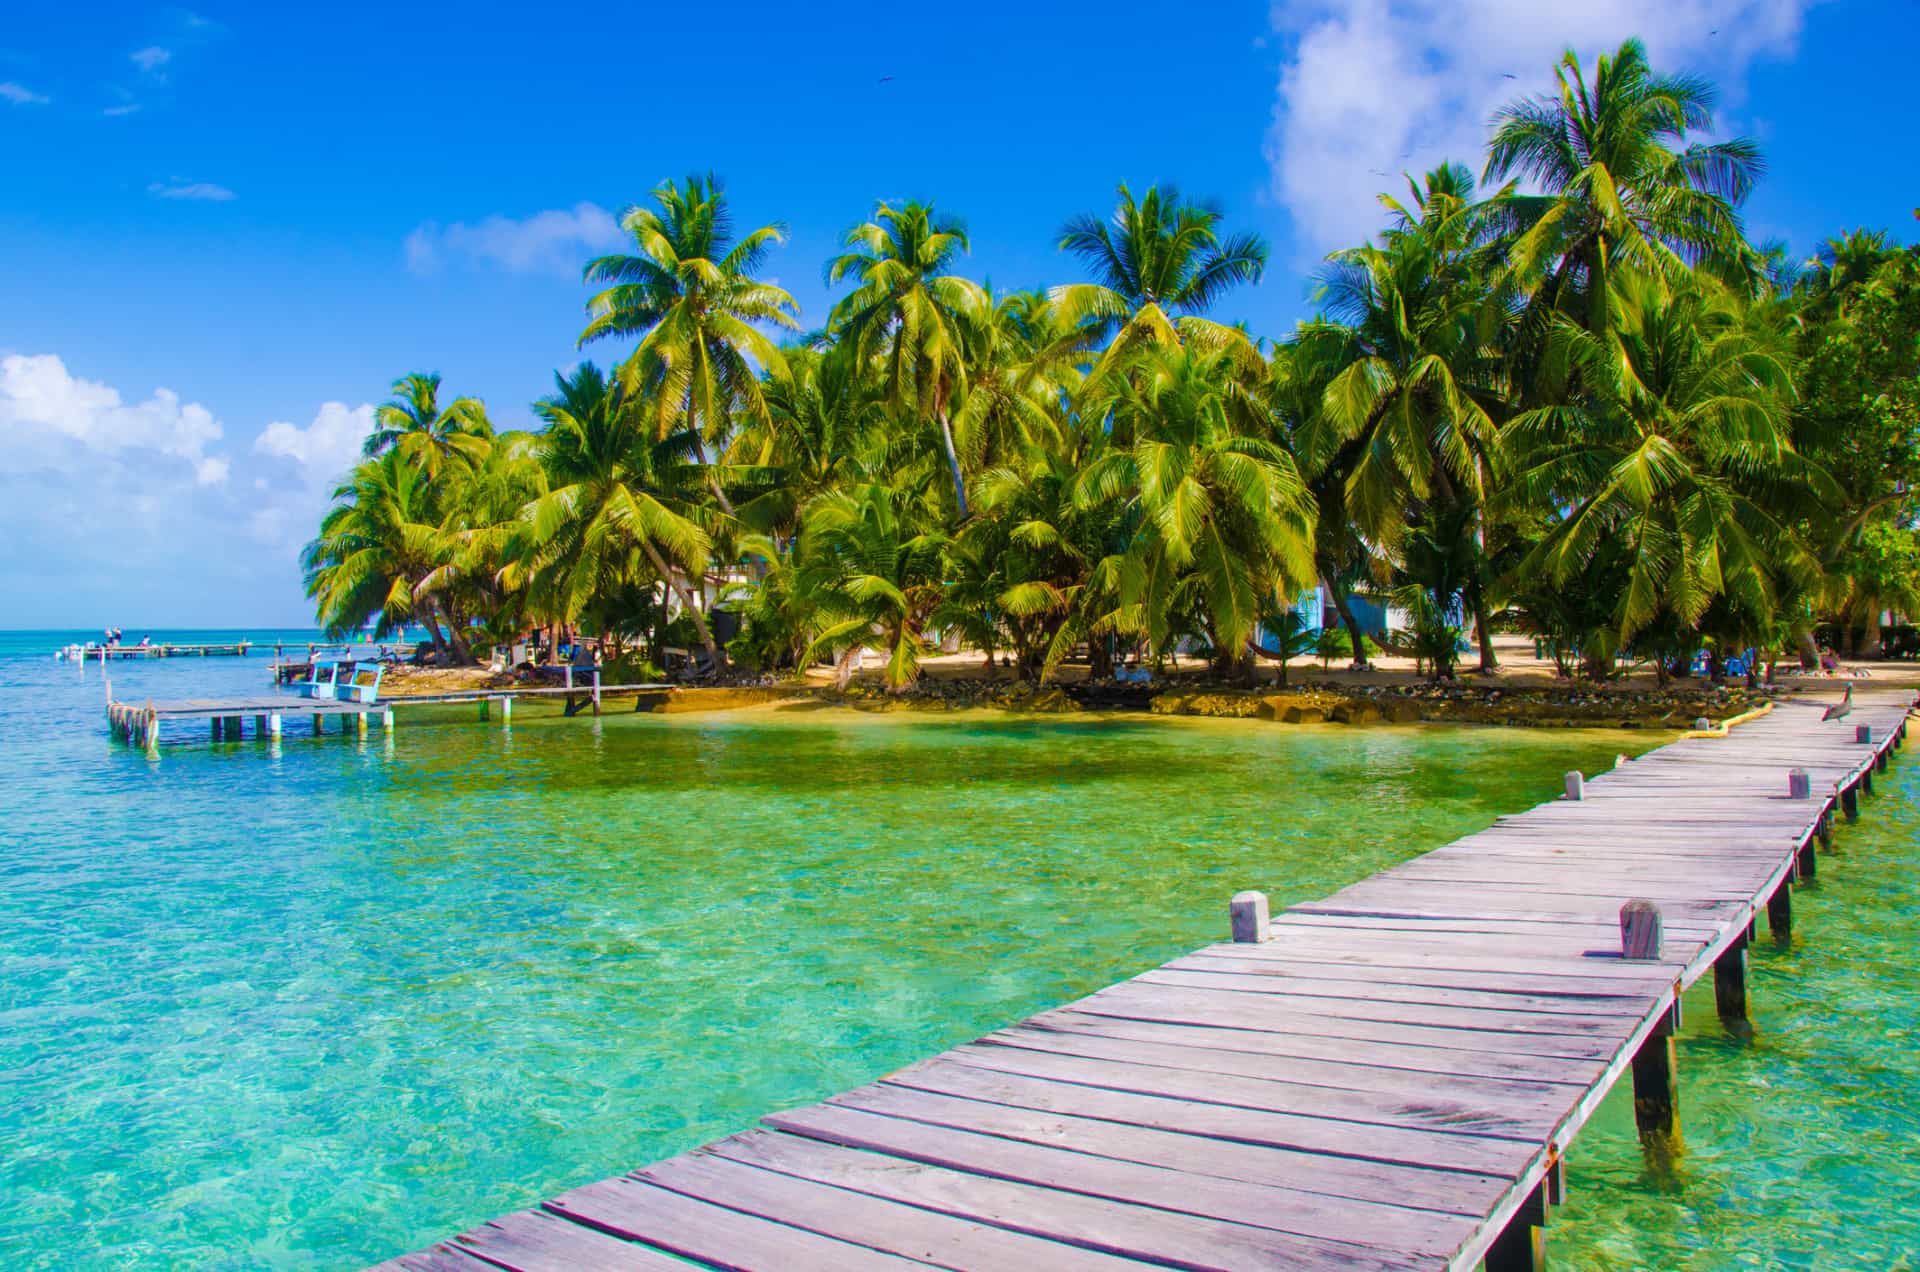 Nel 2005, DiCaprio ha acquistato un'isola situata al largo della costa del Belize per 1,75 milioni di dollari. Prevede di utilizzarla per costruire un "eco-resort" chiamato Blackadore Caye, che sarà completamente alimentato da energia rinnovabile e progettato per aumentare la salute biologica delle specie sull'isola e nelle acque circostanti.